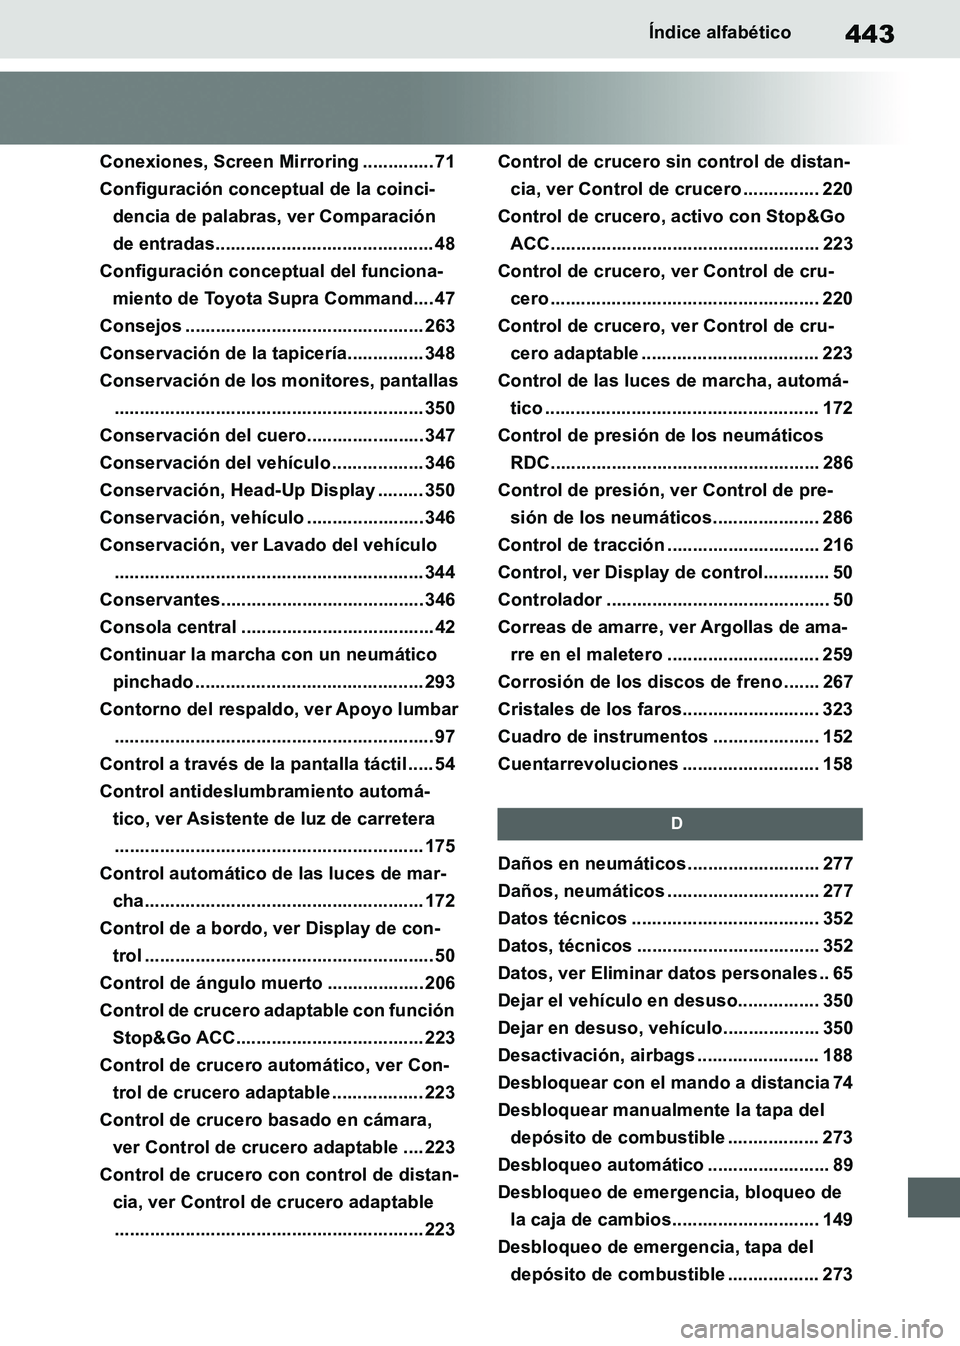 TOYOTA SUPRA 2019  Manuale de Empleo (in Spanish) 443
Supra Owners Manual_ES
Índice alfabético
Conexiones, Screen Mirroring .............. 71
Configuración conceptual de la coinci-
dencia de palabras, ver Comparación 
de entradas................